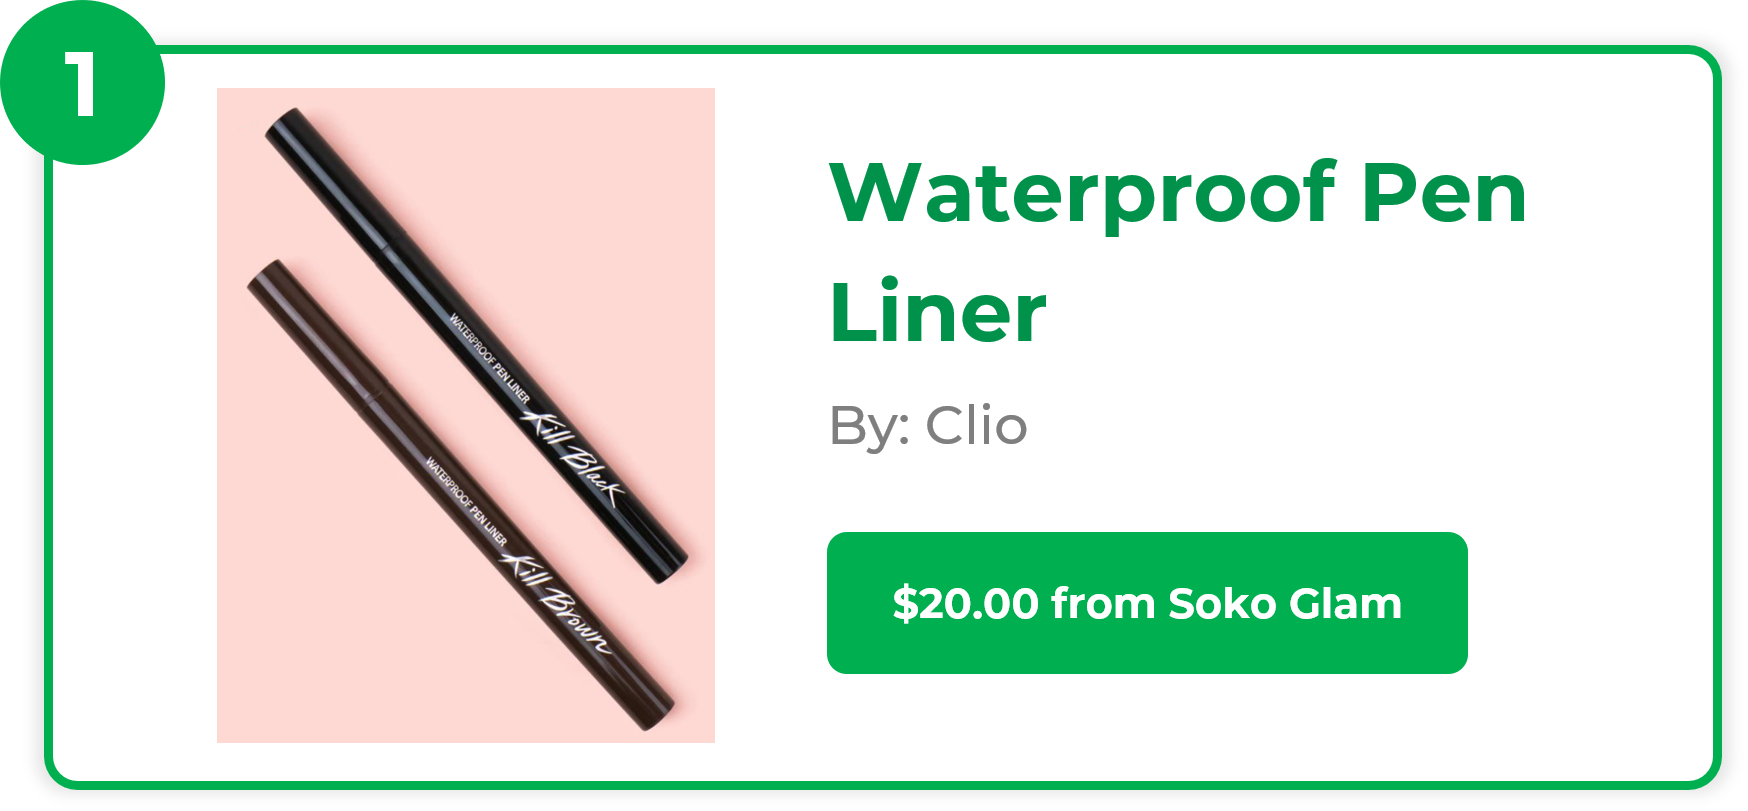 Waterproof Pen Liner - Clio